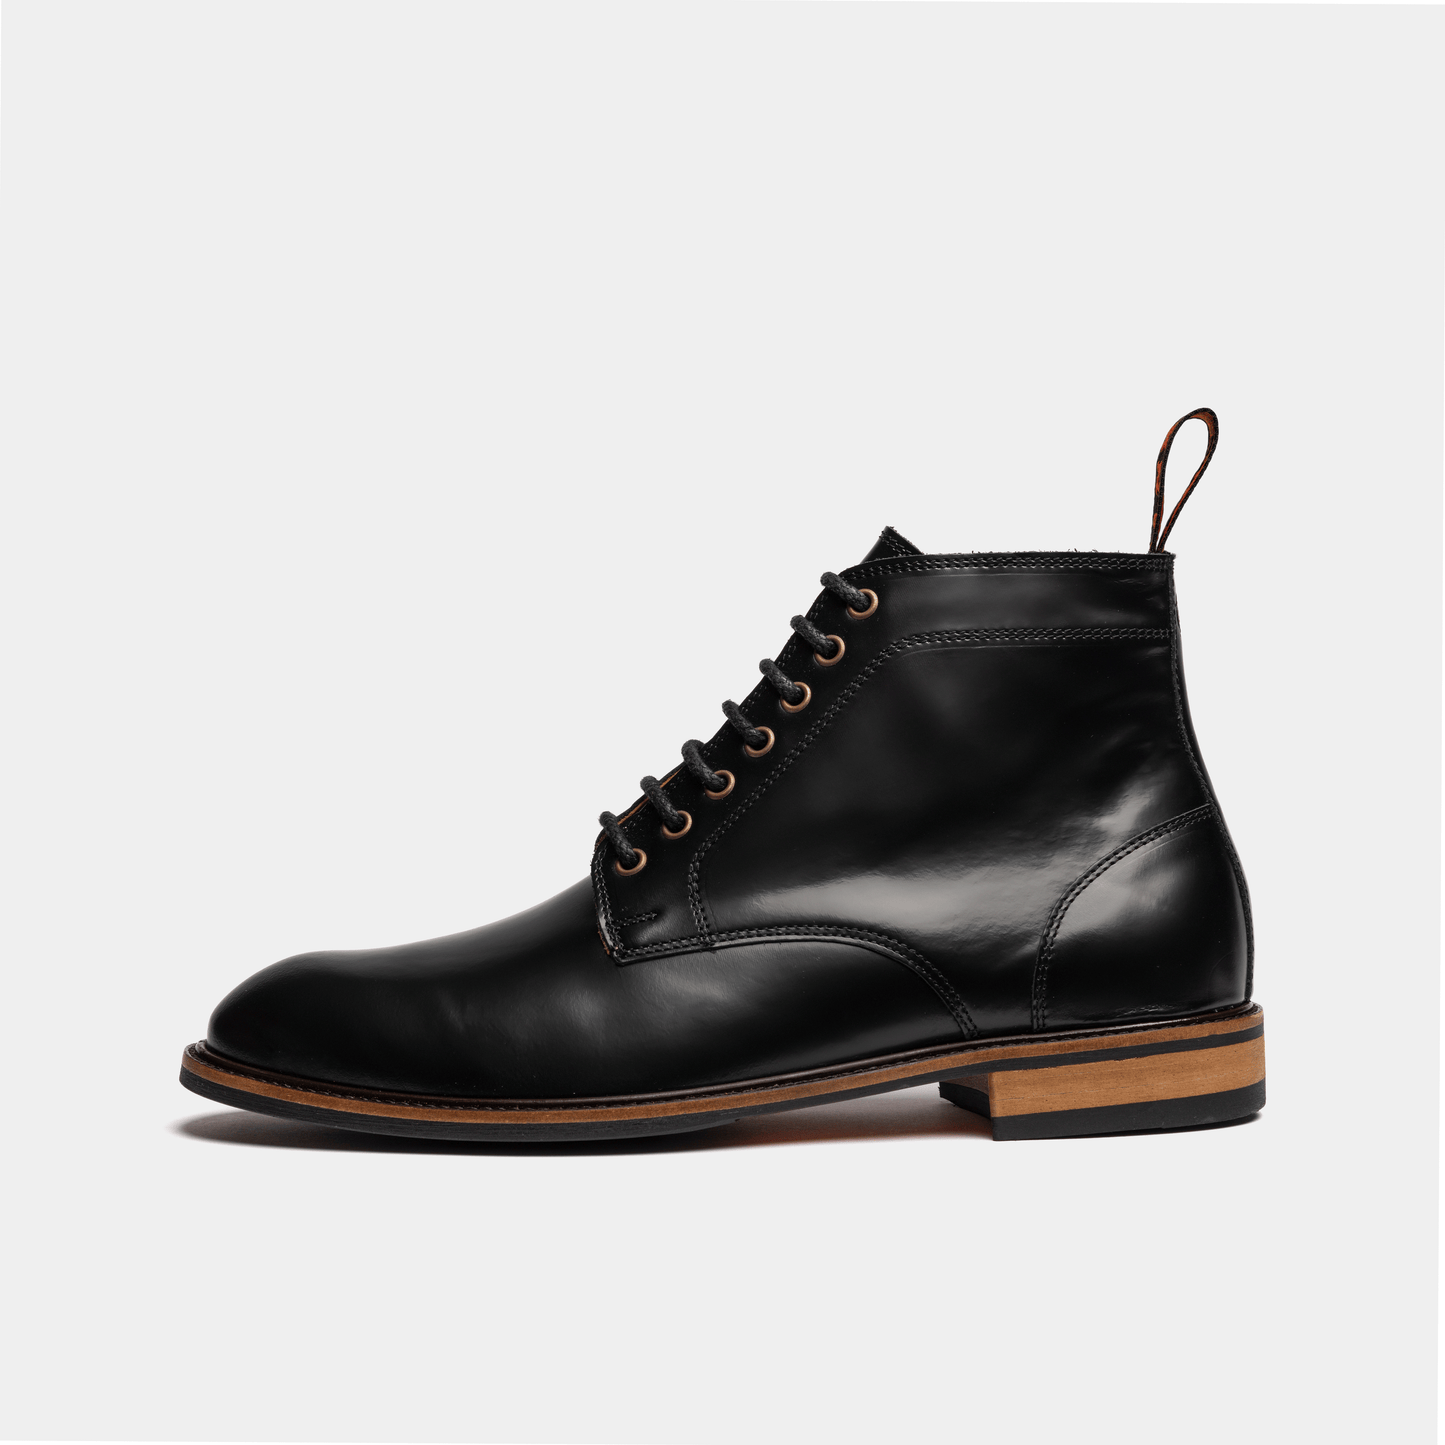 DUTTON // BLACK-MEN'S SHOE | LANX Proper Men's Shoes